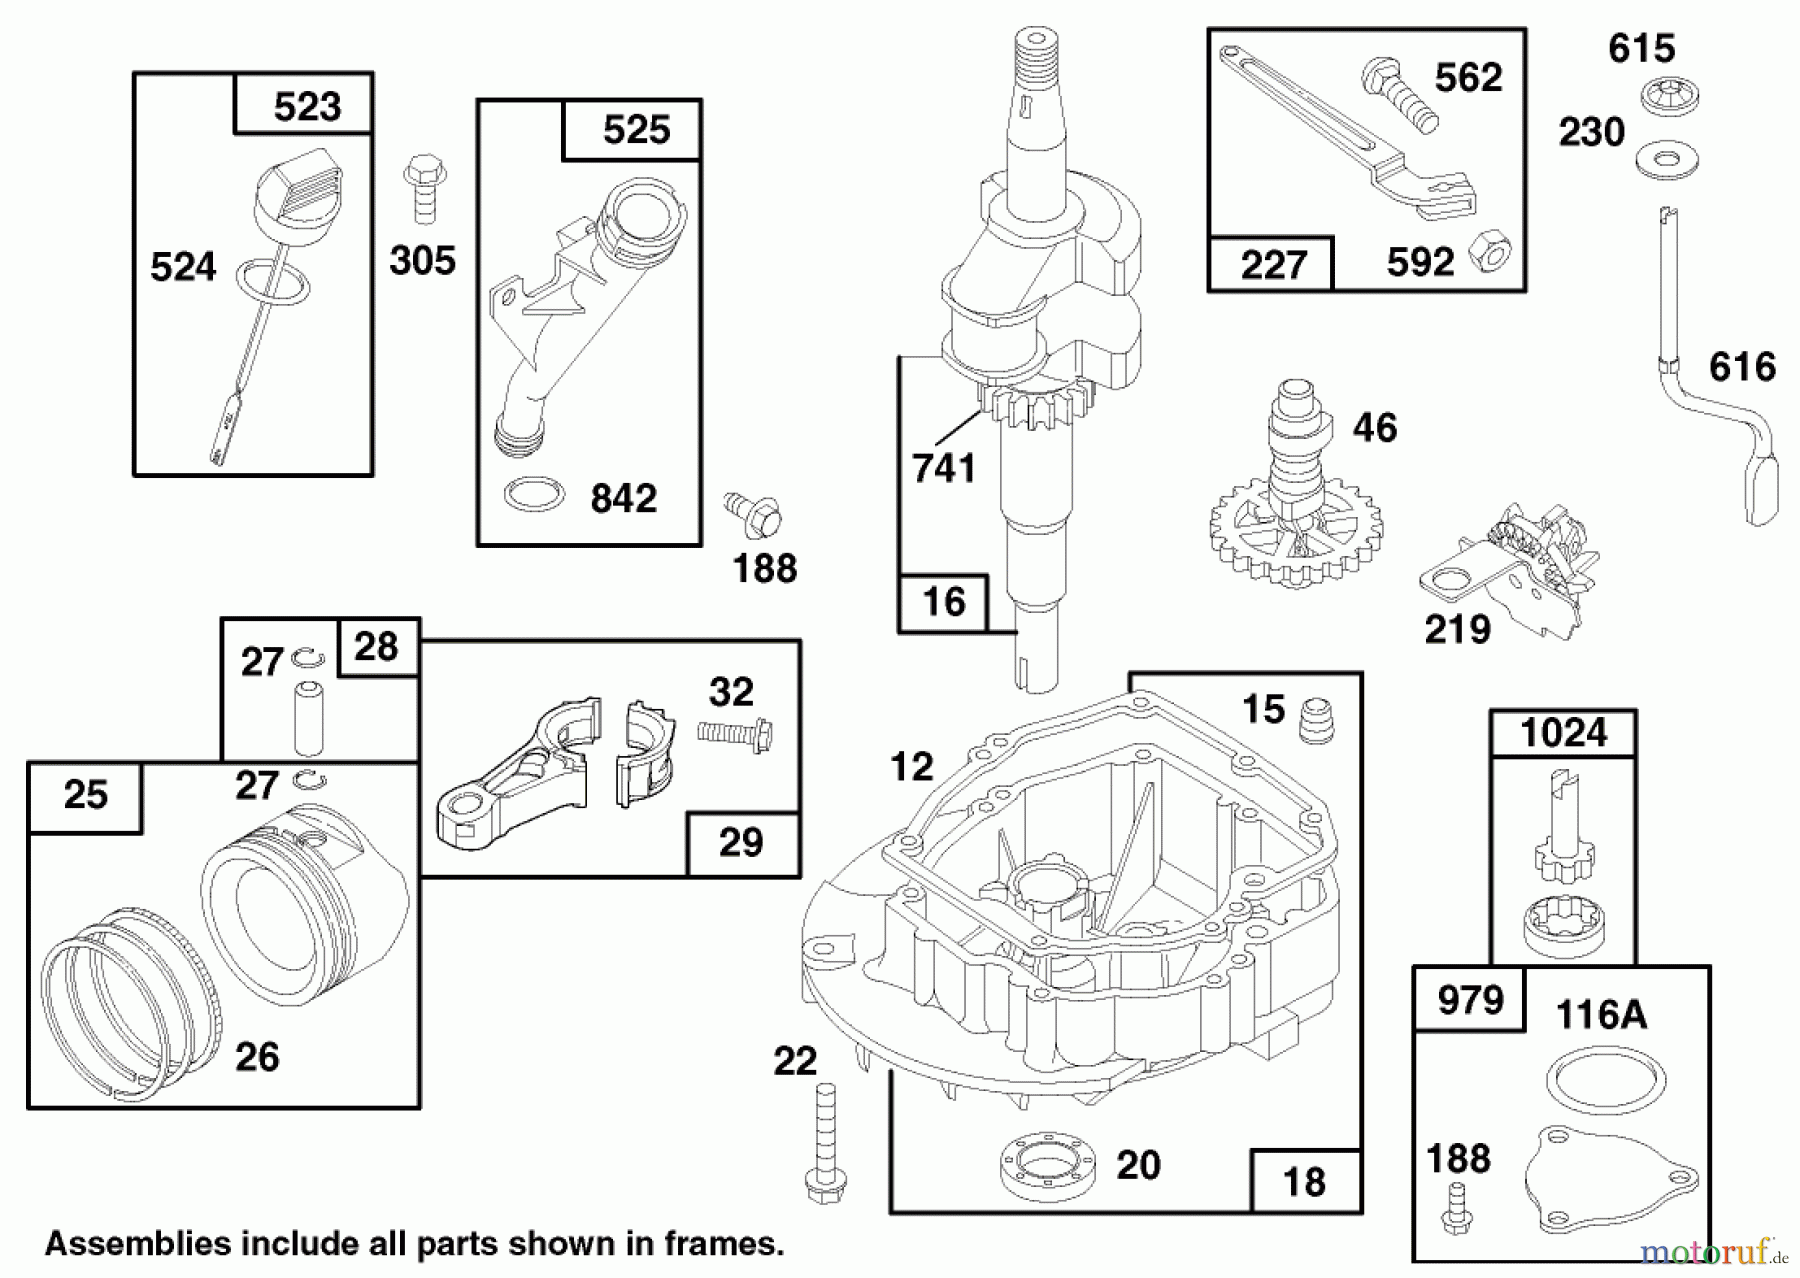  Toro Neu Mowers, Walk-Behind Seite 1 20482 - Toro Super Recycler Mower, 1997 (790000001-799999999) ENGINE GTS 150 (MODEL NO. 20483)